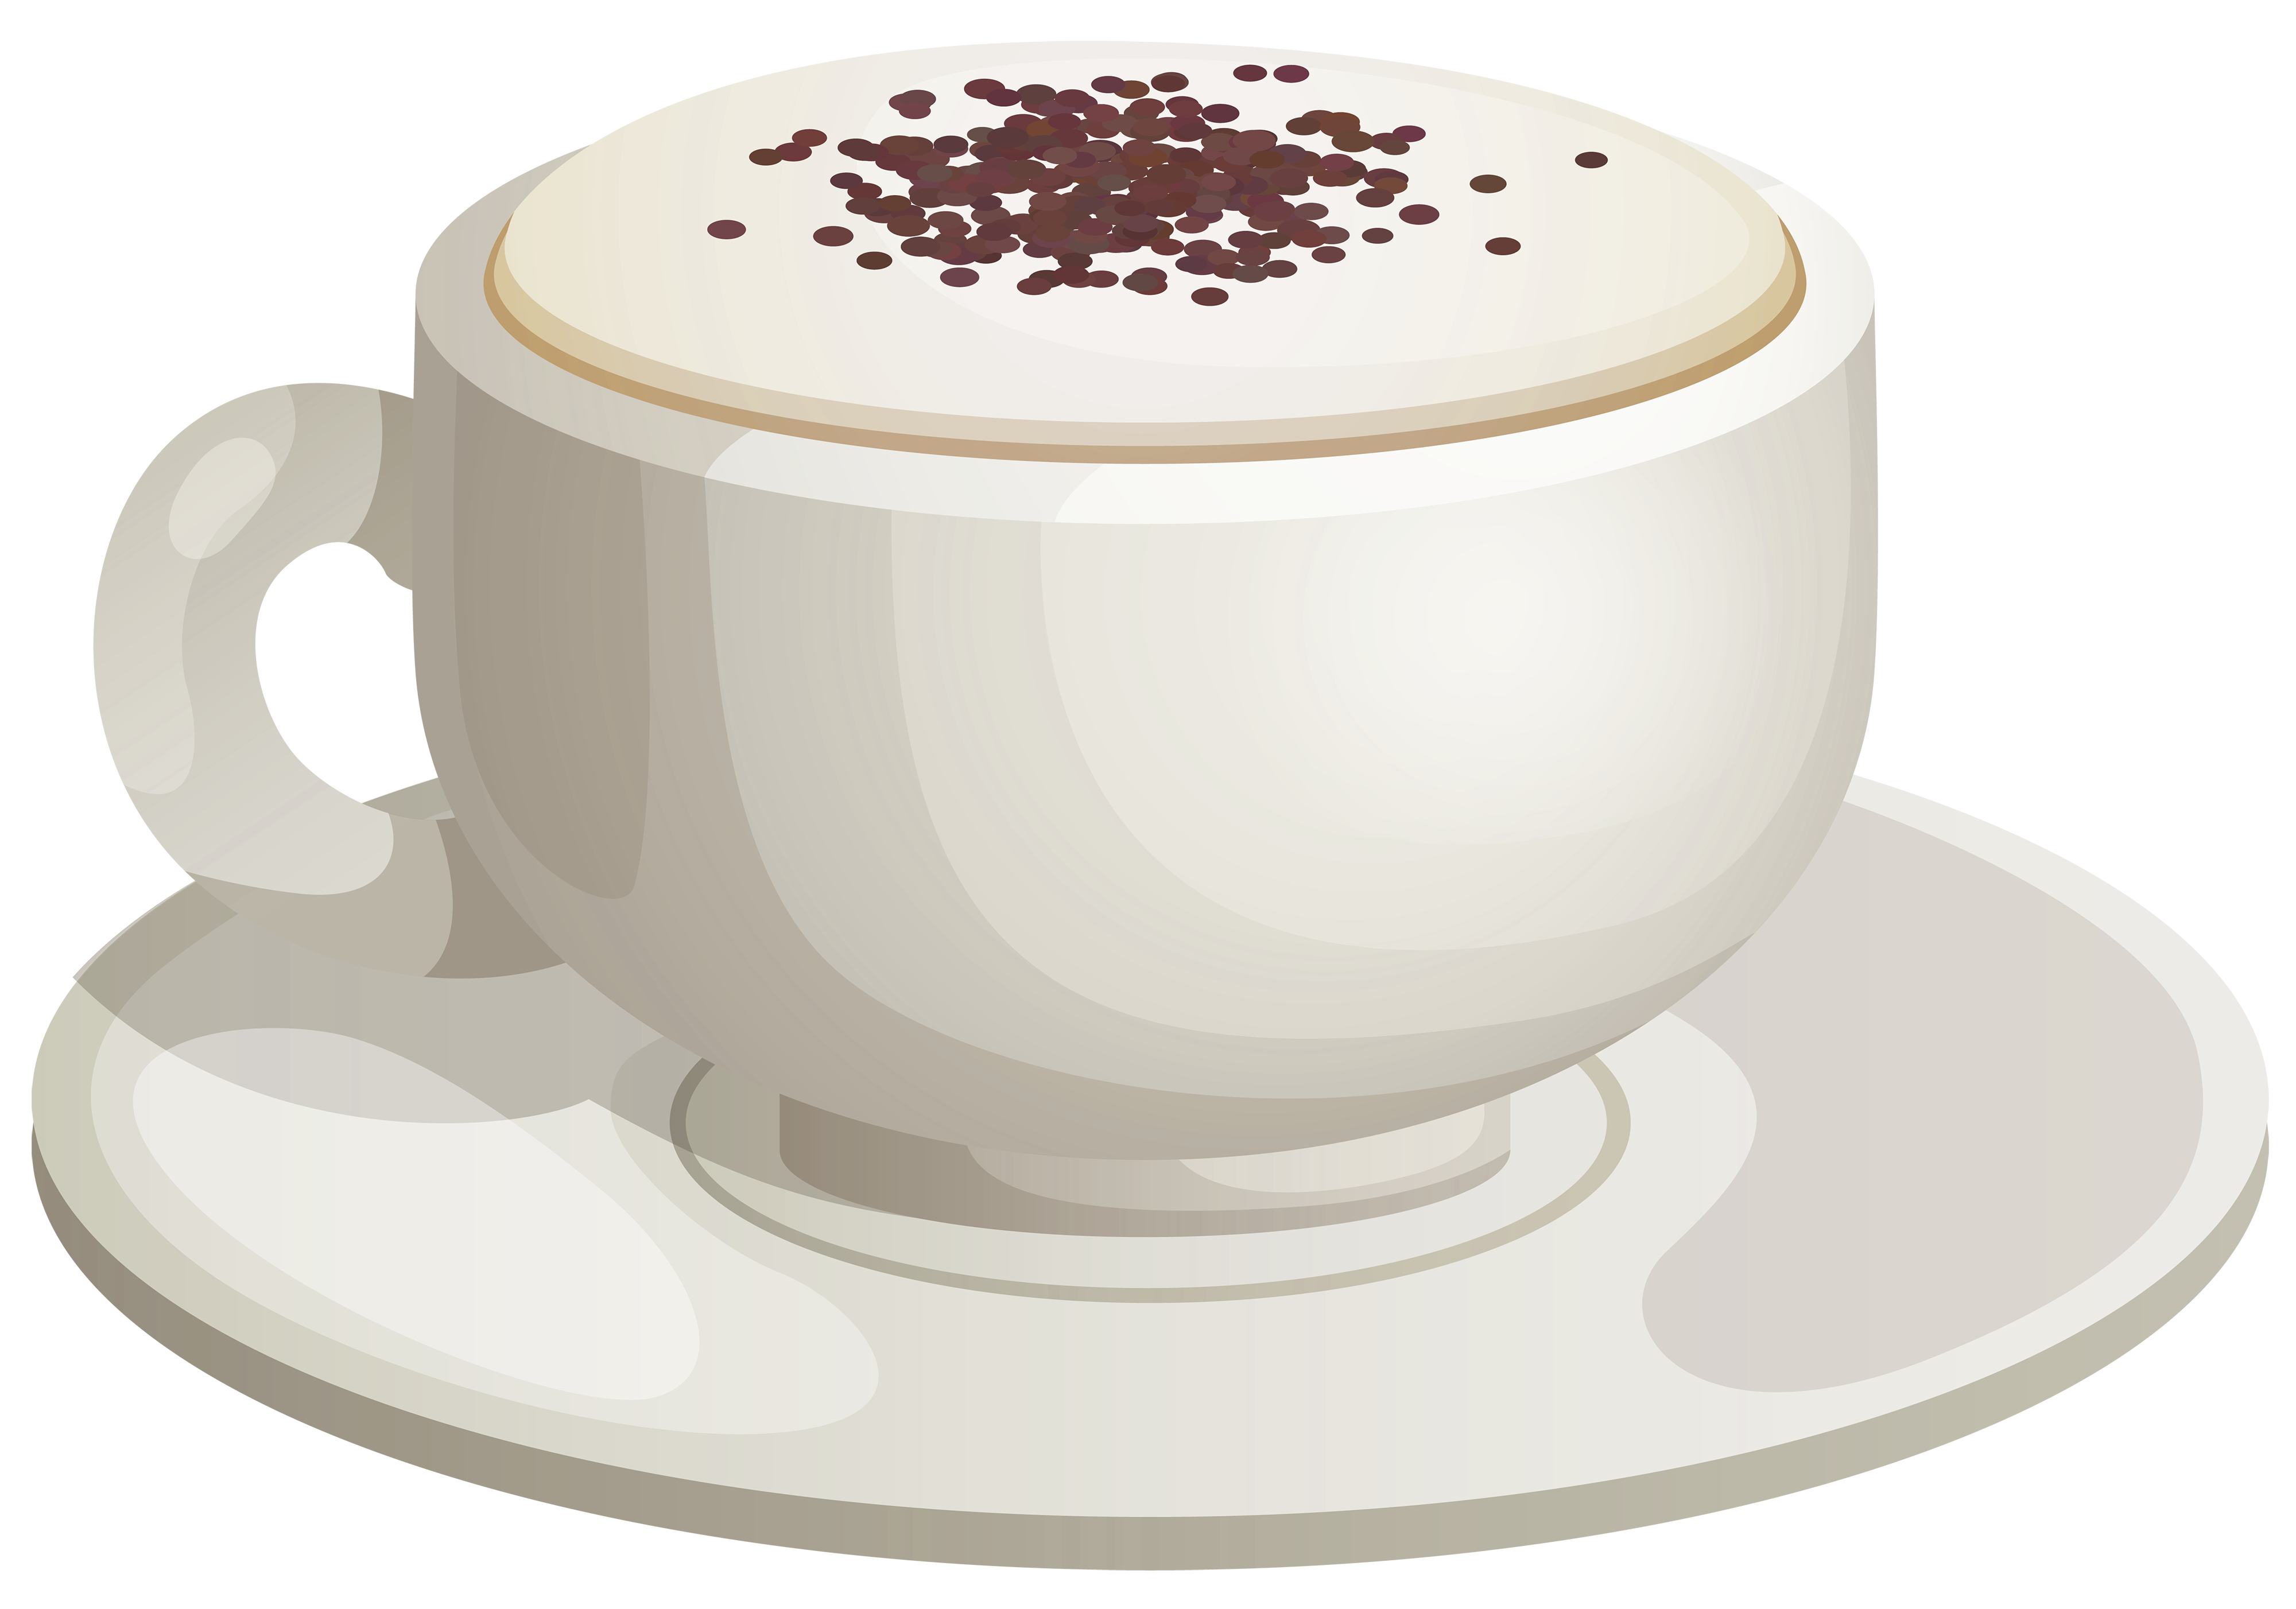 Coffee clipart cappuccino.